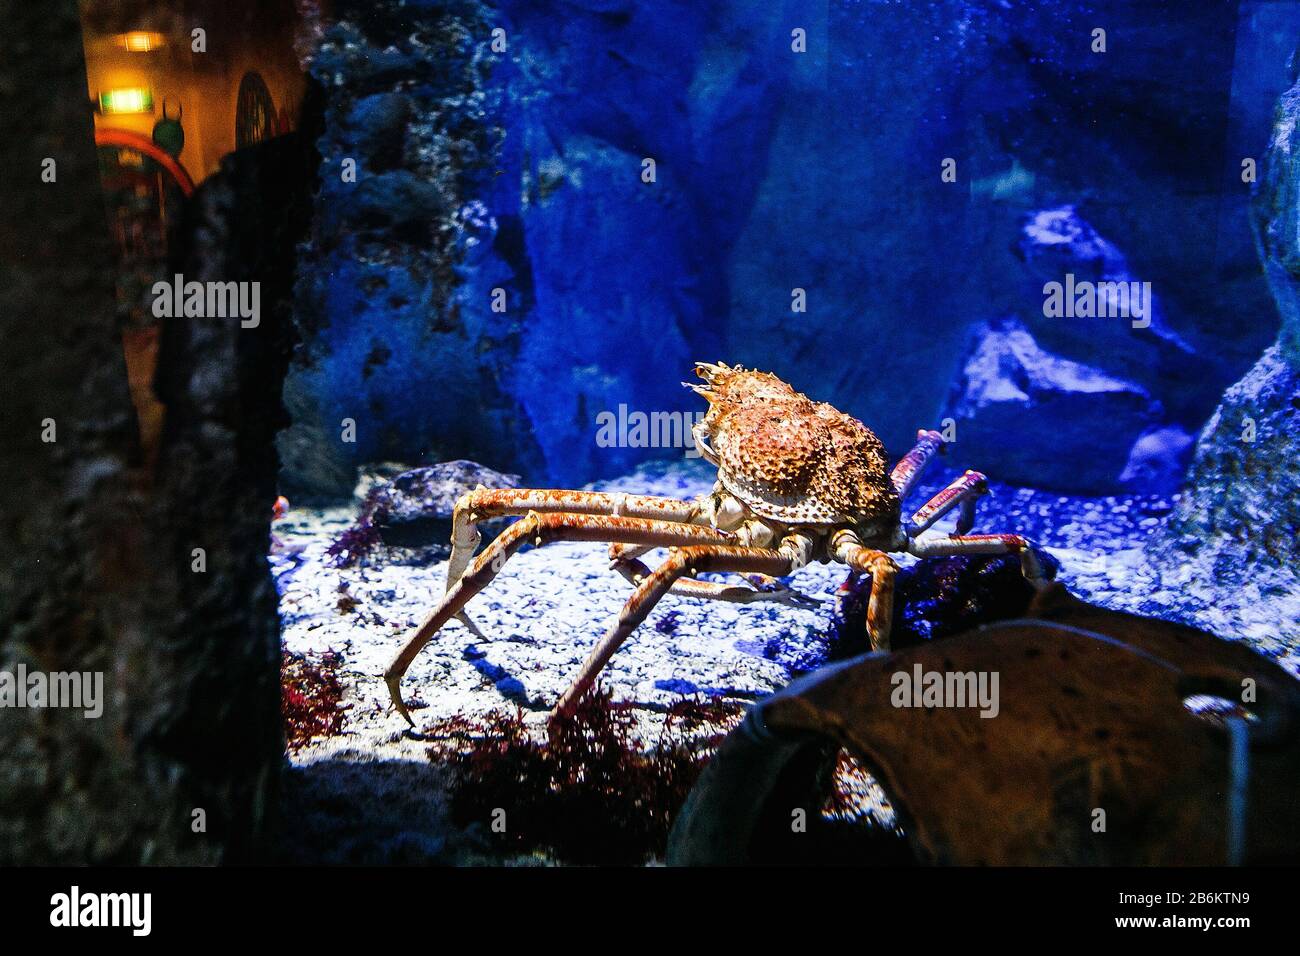 Giant spider crab in aquarium Stock Photo